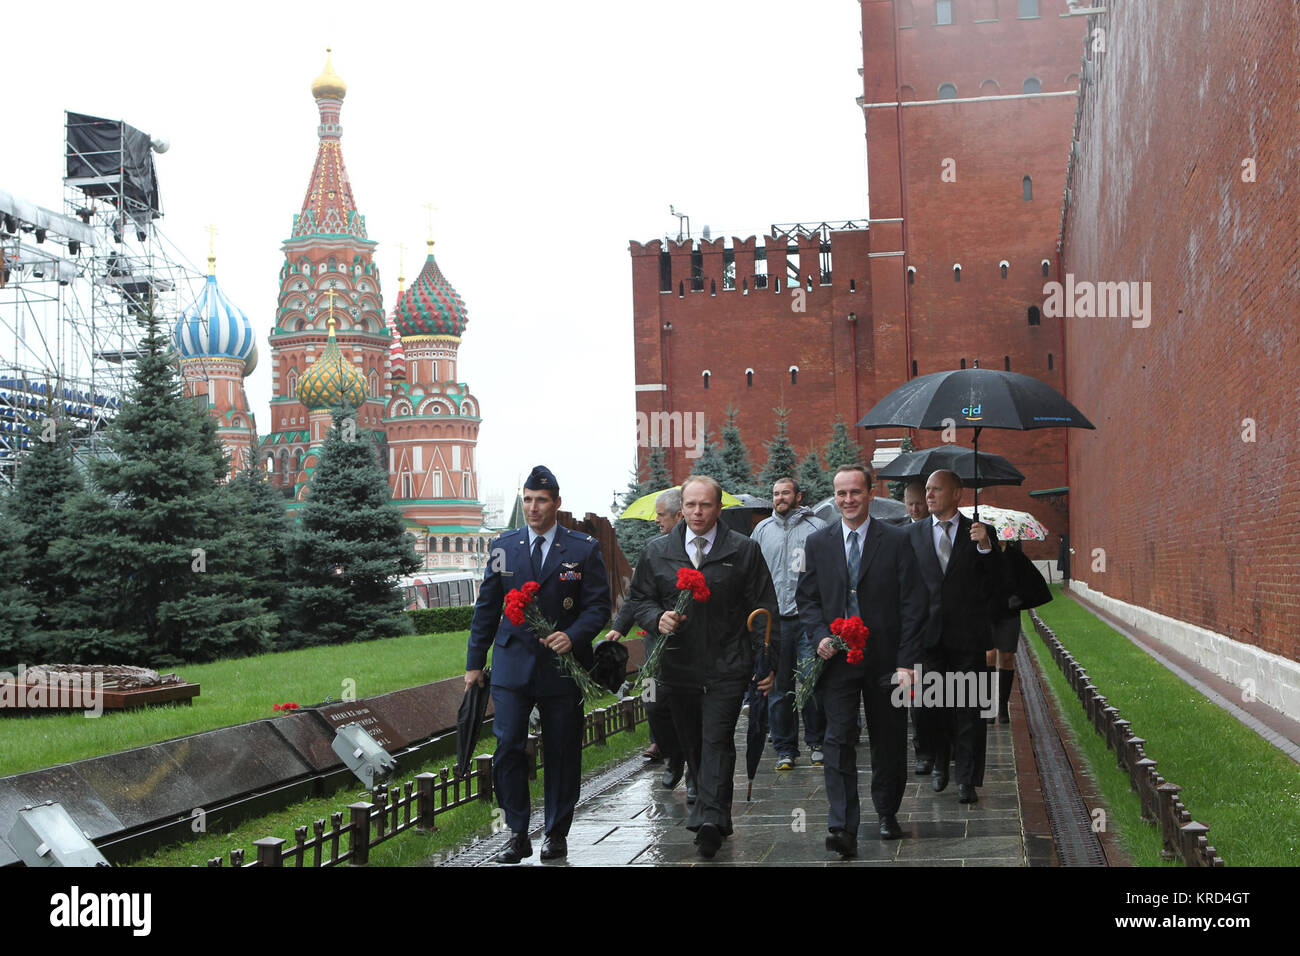 Avec l'oignon dome les clochers de la cathédrale Saint-Basile servant de toile de fond, l'ingénieur de vol de l'expédition 37/38 Michael Hopkins de la NASA (rangée avant, à gauche), commandant de Soyouz Oleg Kotov (au centre de la première rangée), et l'ingénieur de vol Sergey Ryazanskiy (au premier rang, à droite) montrent le chemin le long du mur du Kremlin à la place Rouge à Moscou, pour déposer des fleurs le 6 septembre dans une cérémonie traditionnelle à l'honneur des icônes de l'espace russe qui sont enterrés là. Kotov, Hopkins et Ryazanskiy se préparent pour leur lancement de la Station spatiale internationale depuis le cosmodrome de Baïkonour au Kazakhstan le 26 septembre, le Kazakh du temps, à bord du Soyouz T Banque D'Images